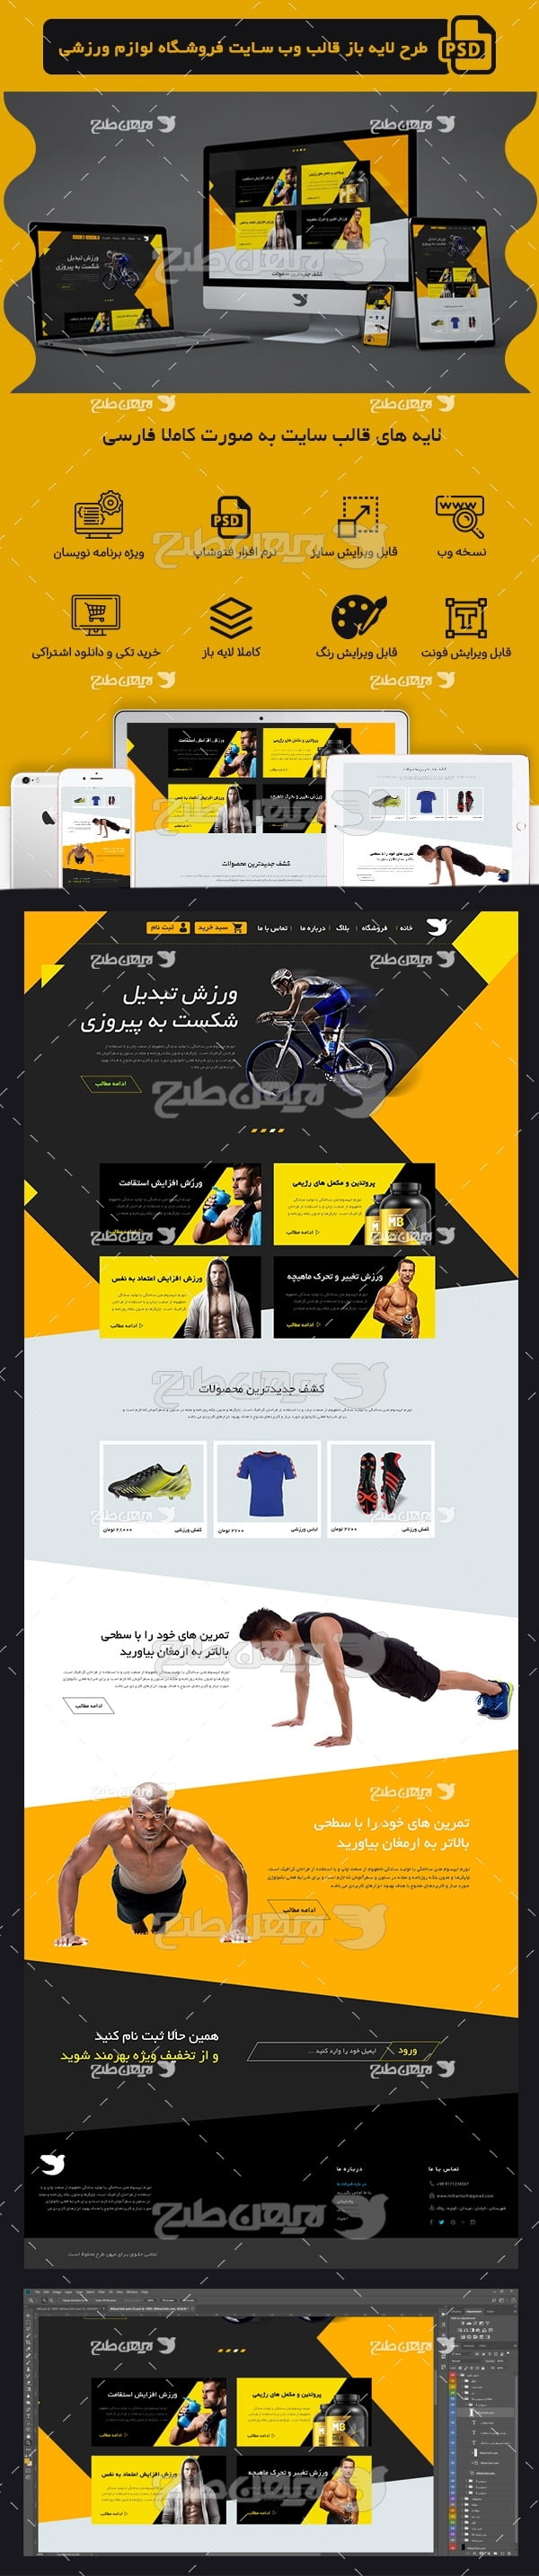 طرح لایه باز صفحه اصلی قالب سایت فروشگاه لوازم ورزشی